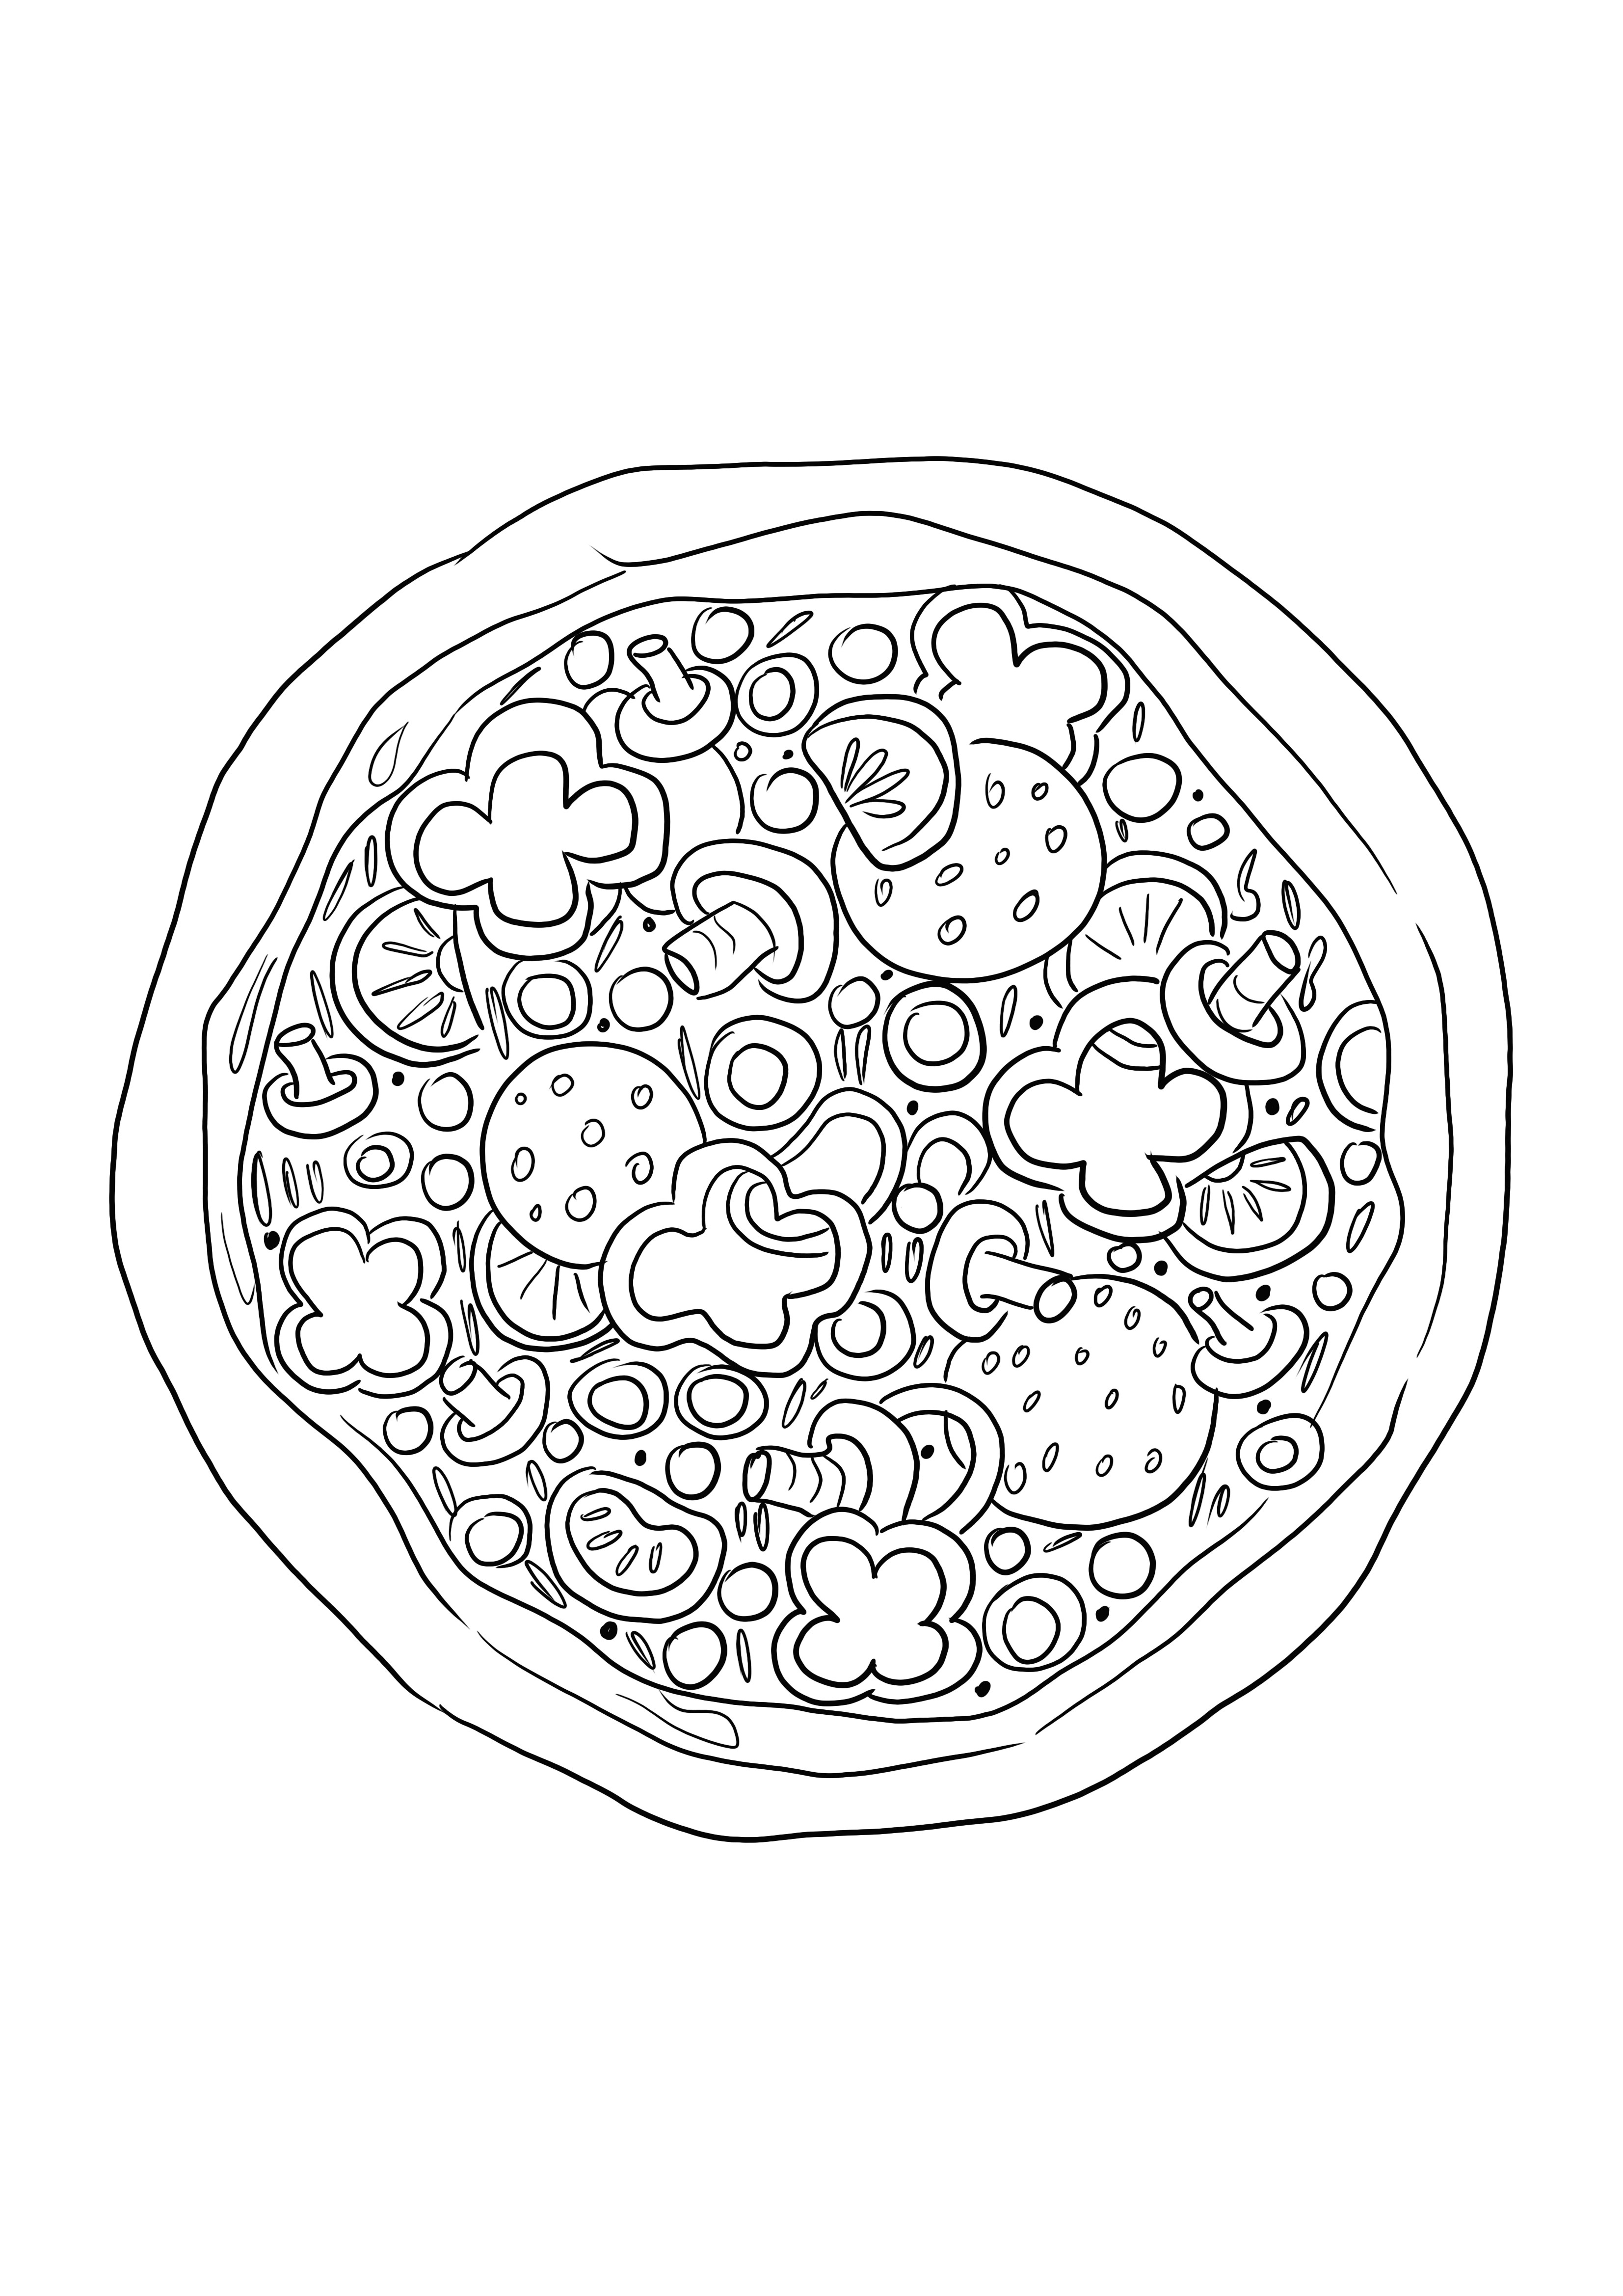 Pizza kleurplaat voor kinderen om gemakkelijk te kleuren en te leren over eten kleurplaat